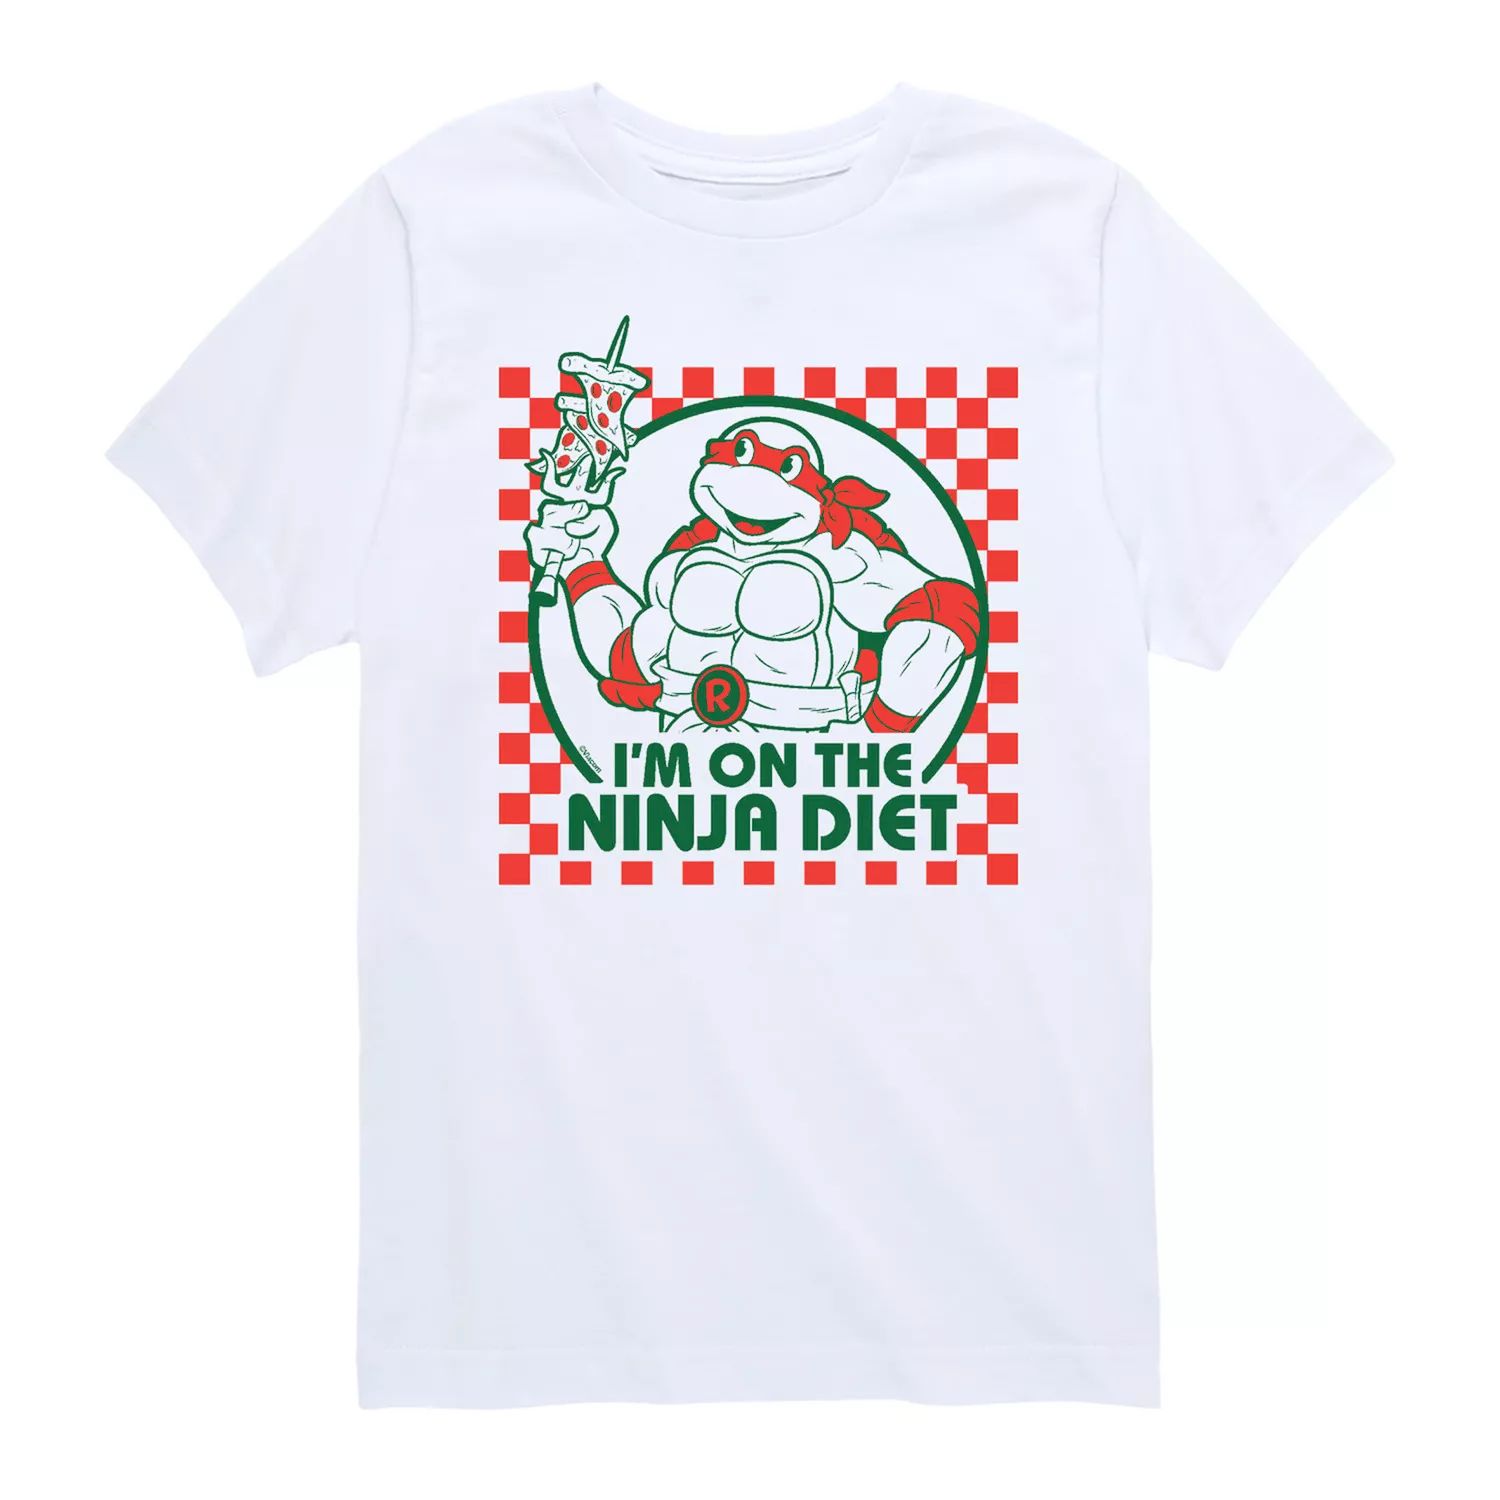 Футболка с рисунком «Черепашки-ниндзя» для мальчиков 8–20 лет, диетическая пицца, футболка Licensed Character зеленая футболка с рисунком черепашки ниндзя для мальчиков 8–20 лет licensed character